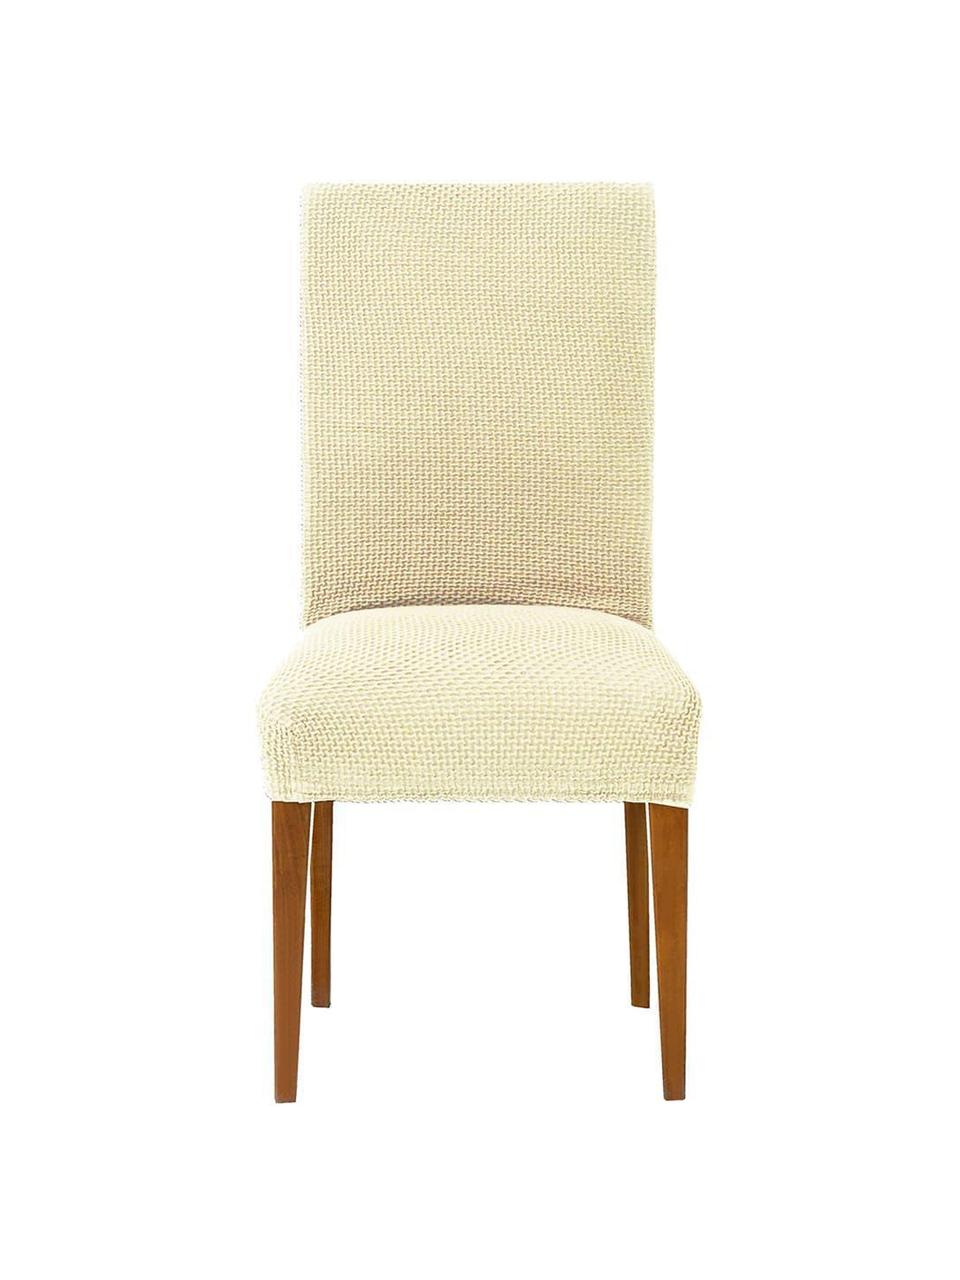 Pokrowiec na krzesło z oparciem Cora, 2 szt., 55% poliester, 30% bawełna, 15% elastomer, Odcienie kremowego, S 50 x G 55 cm